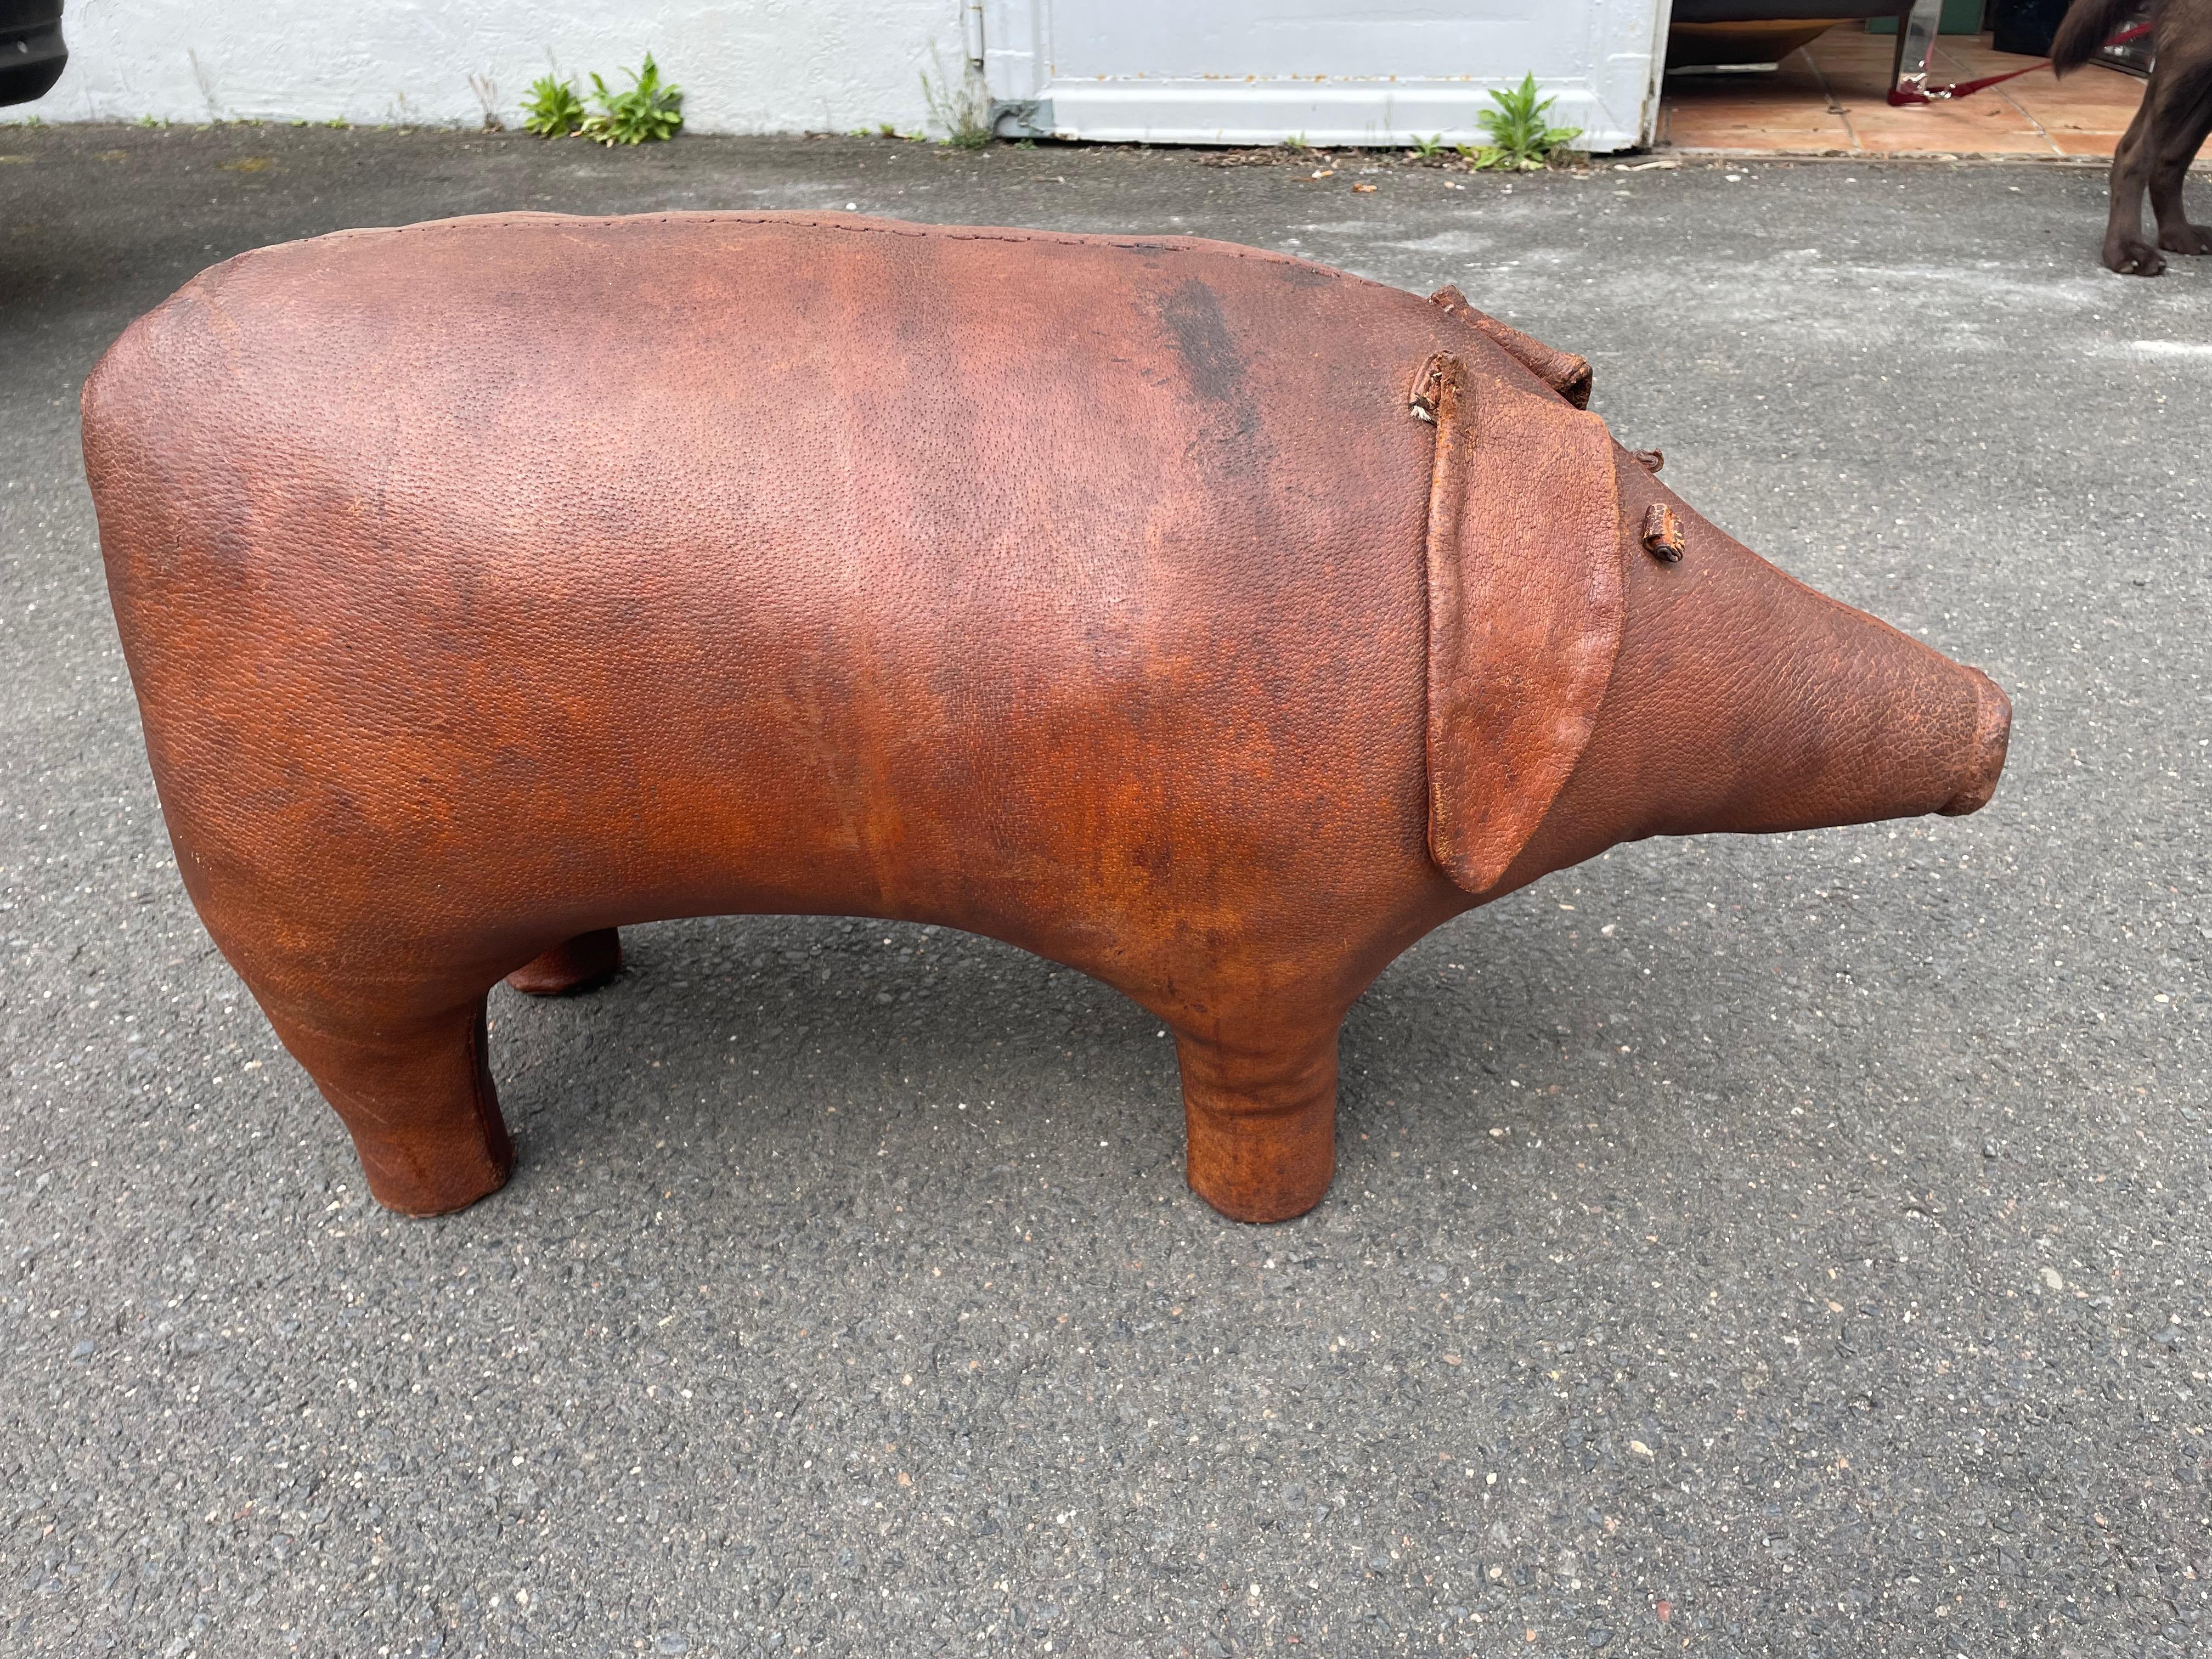 Grand pouf PIG par Dimitri Omersa., années 1960. Abercrombie & Fitch.
Le cochon a été l'un des premiers modèles d'Omersa 
Le grand cochon est rempli de laine de bois et recouvert de cuir.
Le porc en cuir a été professionnellement nettoyé et